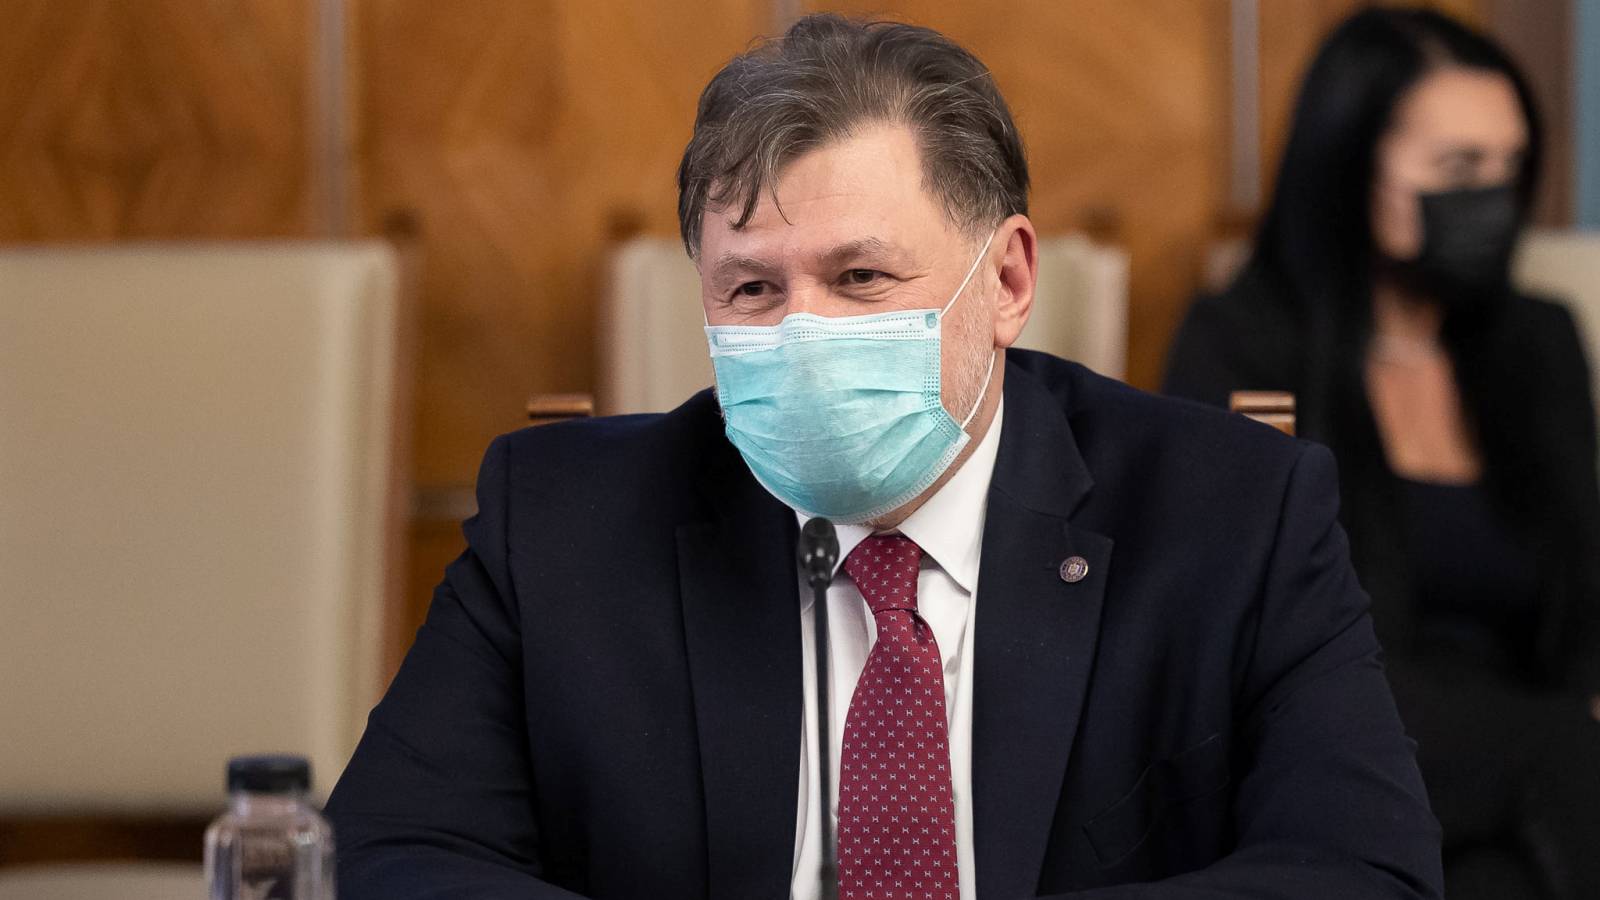 Gesundheitsminister kündigte in letzter Minute Maßnahmen an, die Auswirkungen auf Rumänien haben